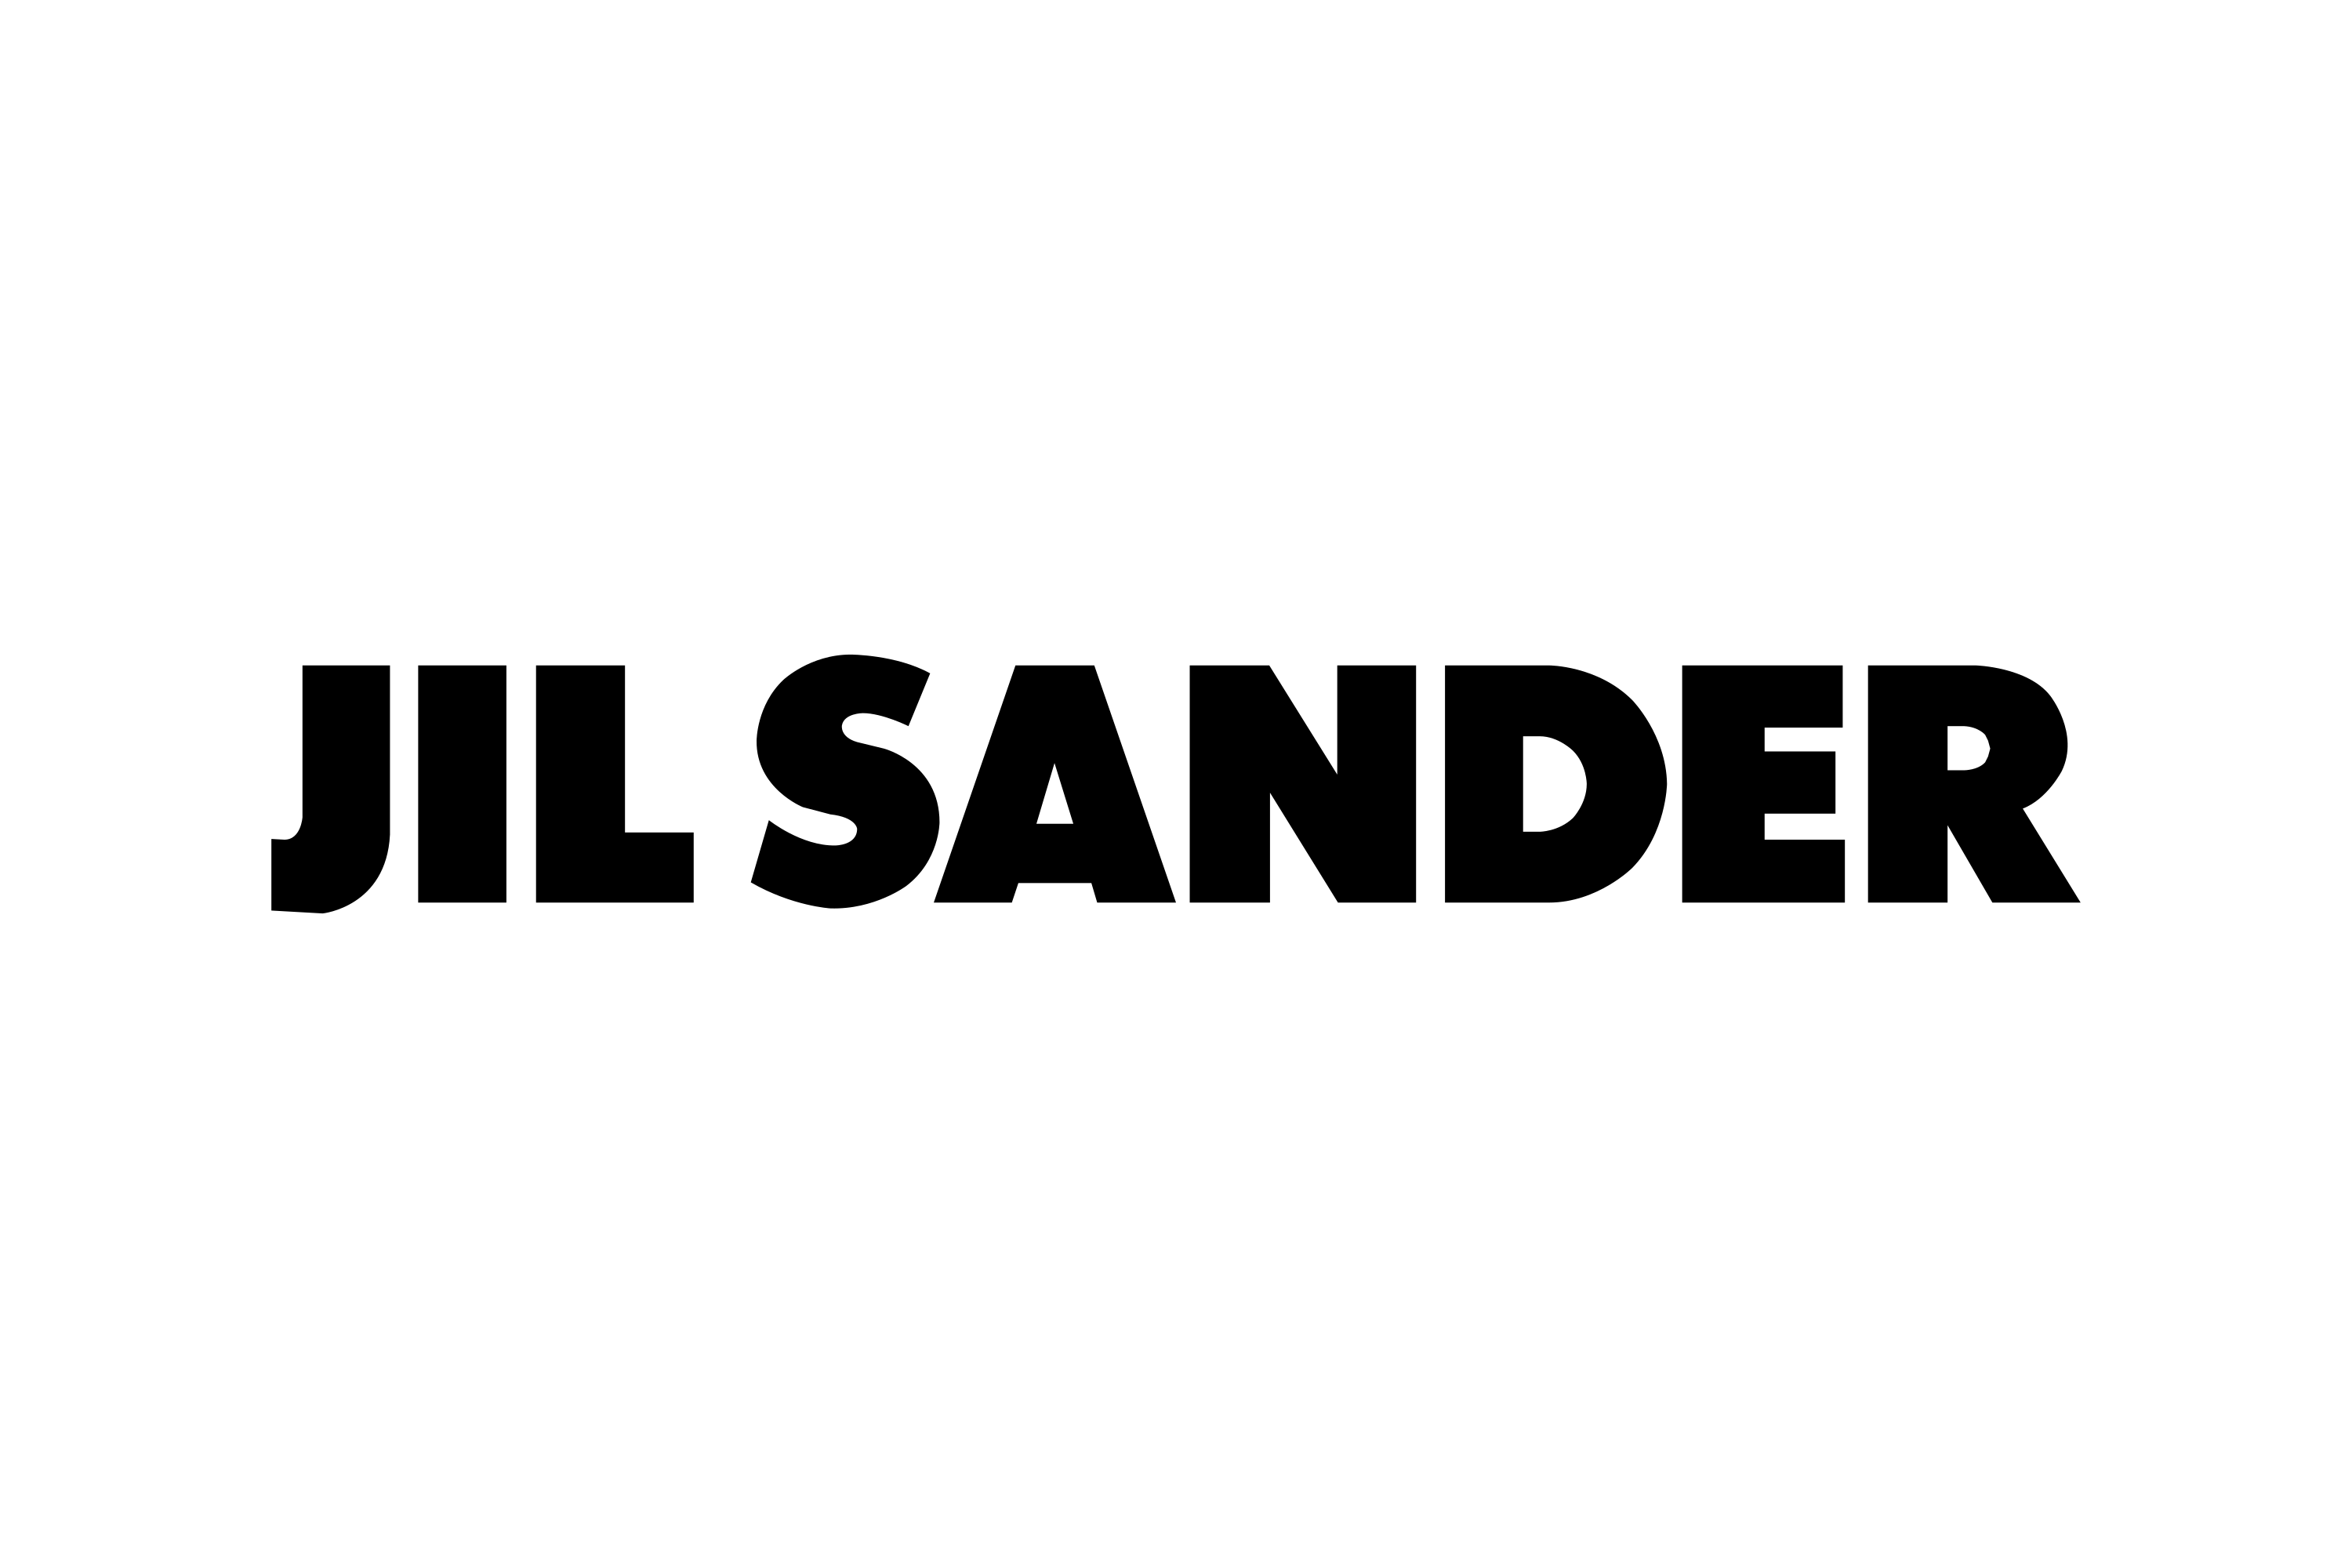 Download Jil Sander Logo in SVG Vector or PNG File Format - Logo.wine